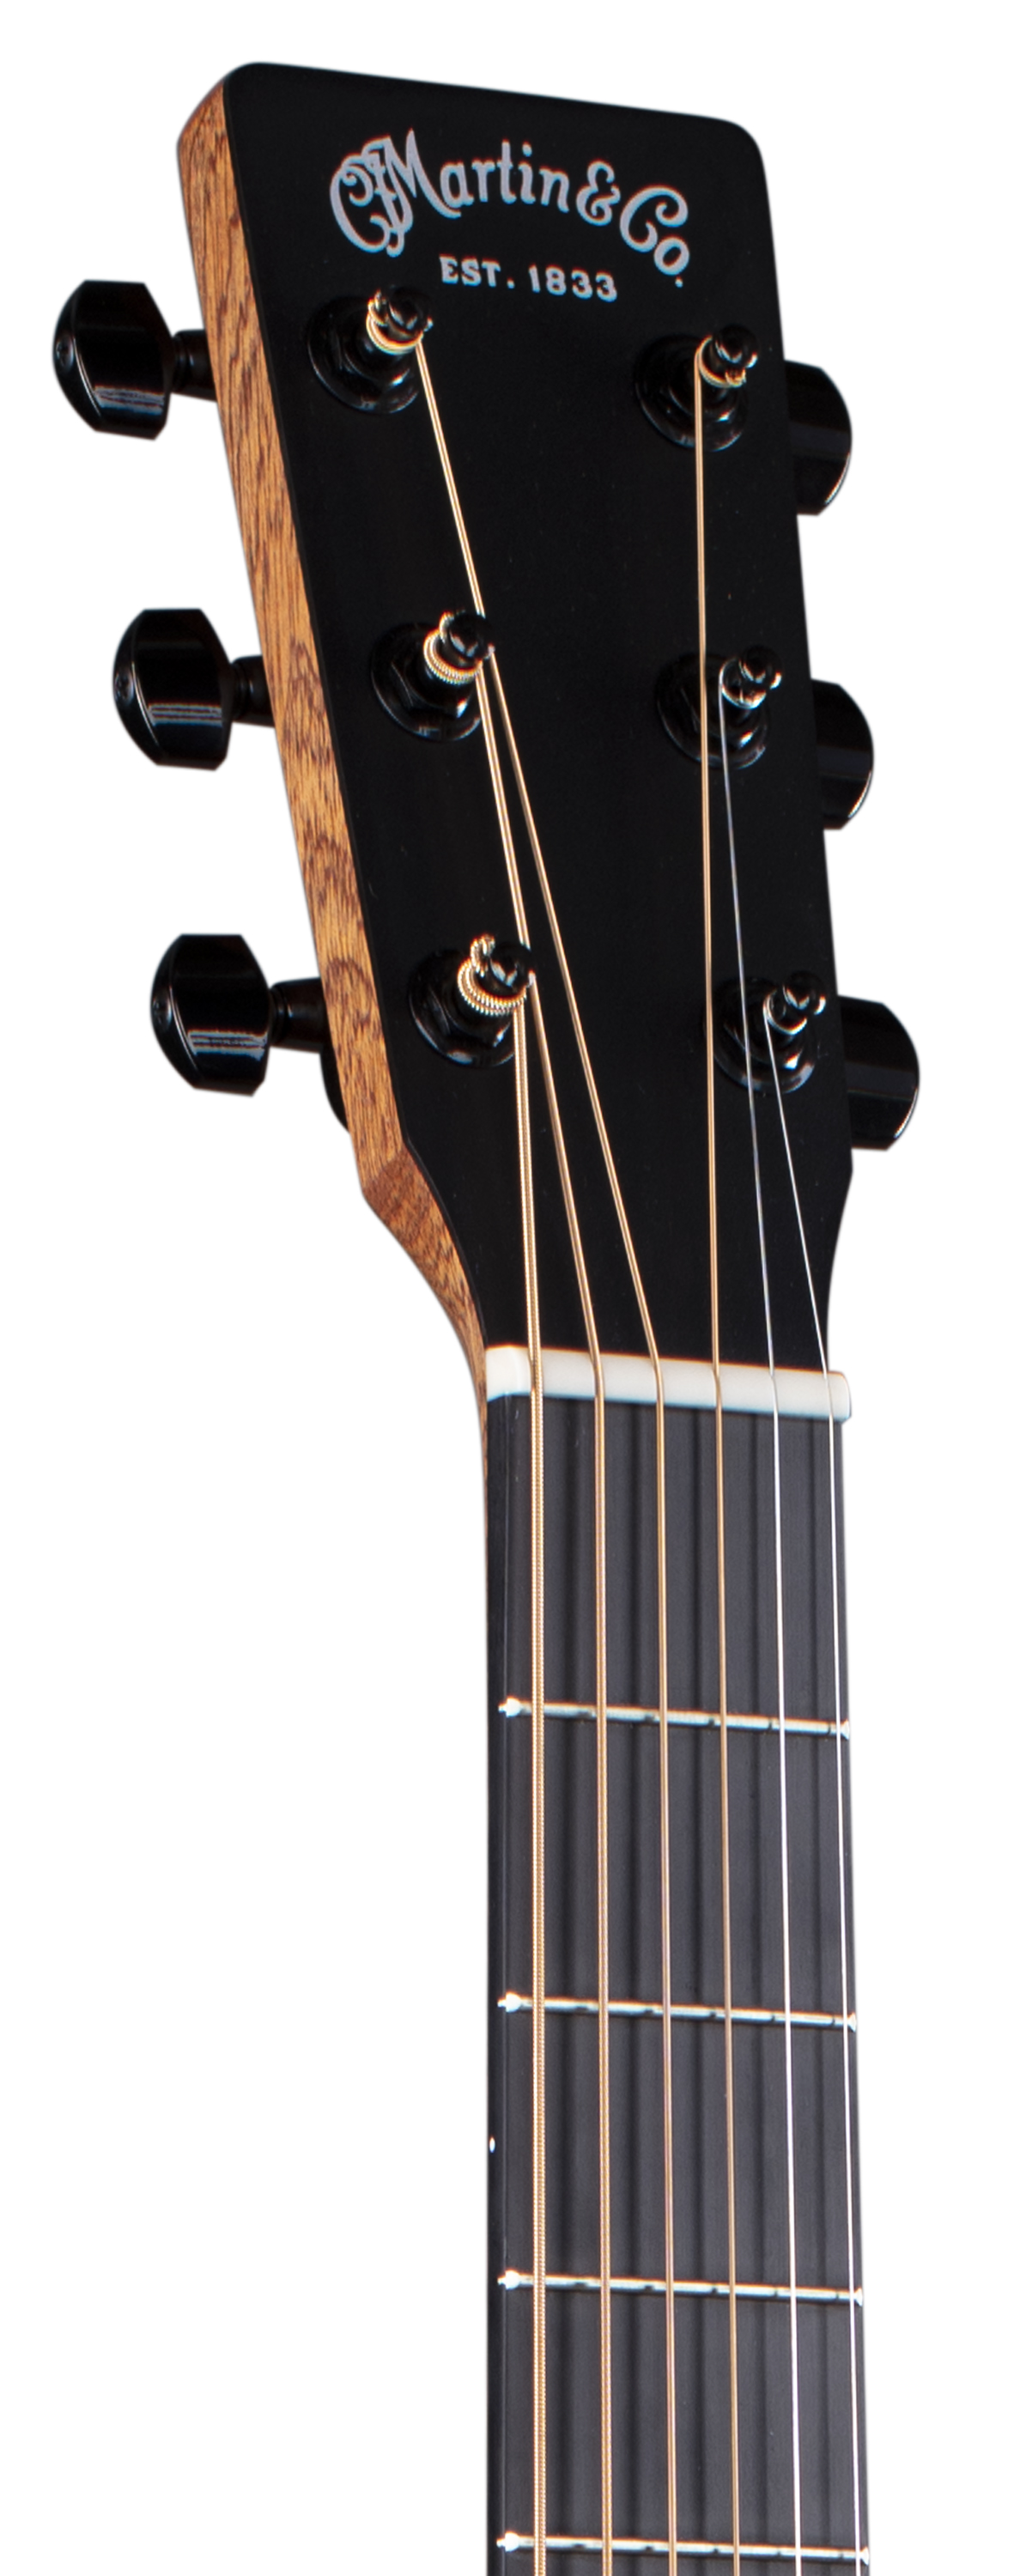 Martin D-12E Koa Acoustic-Electric Guitar | Martin Guitar